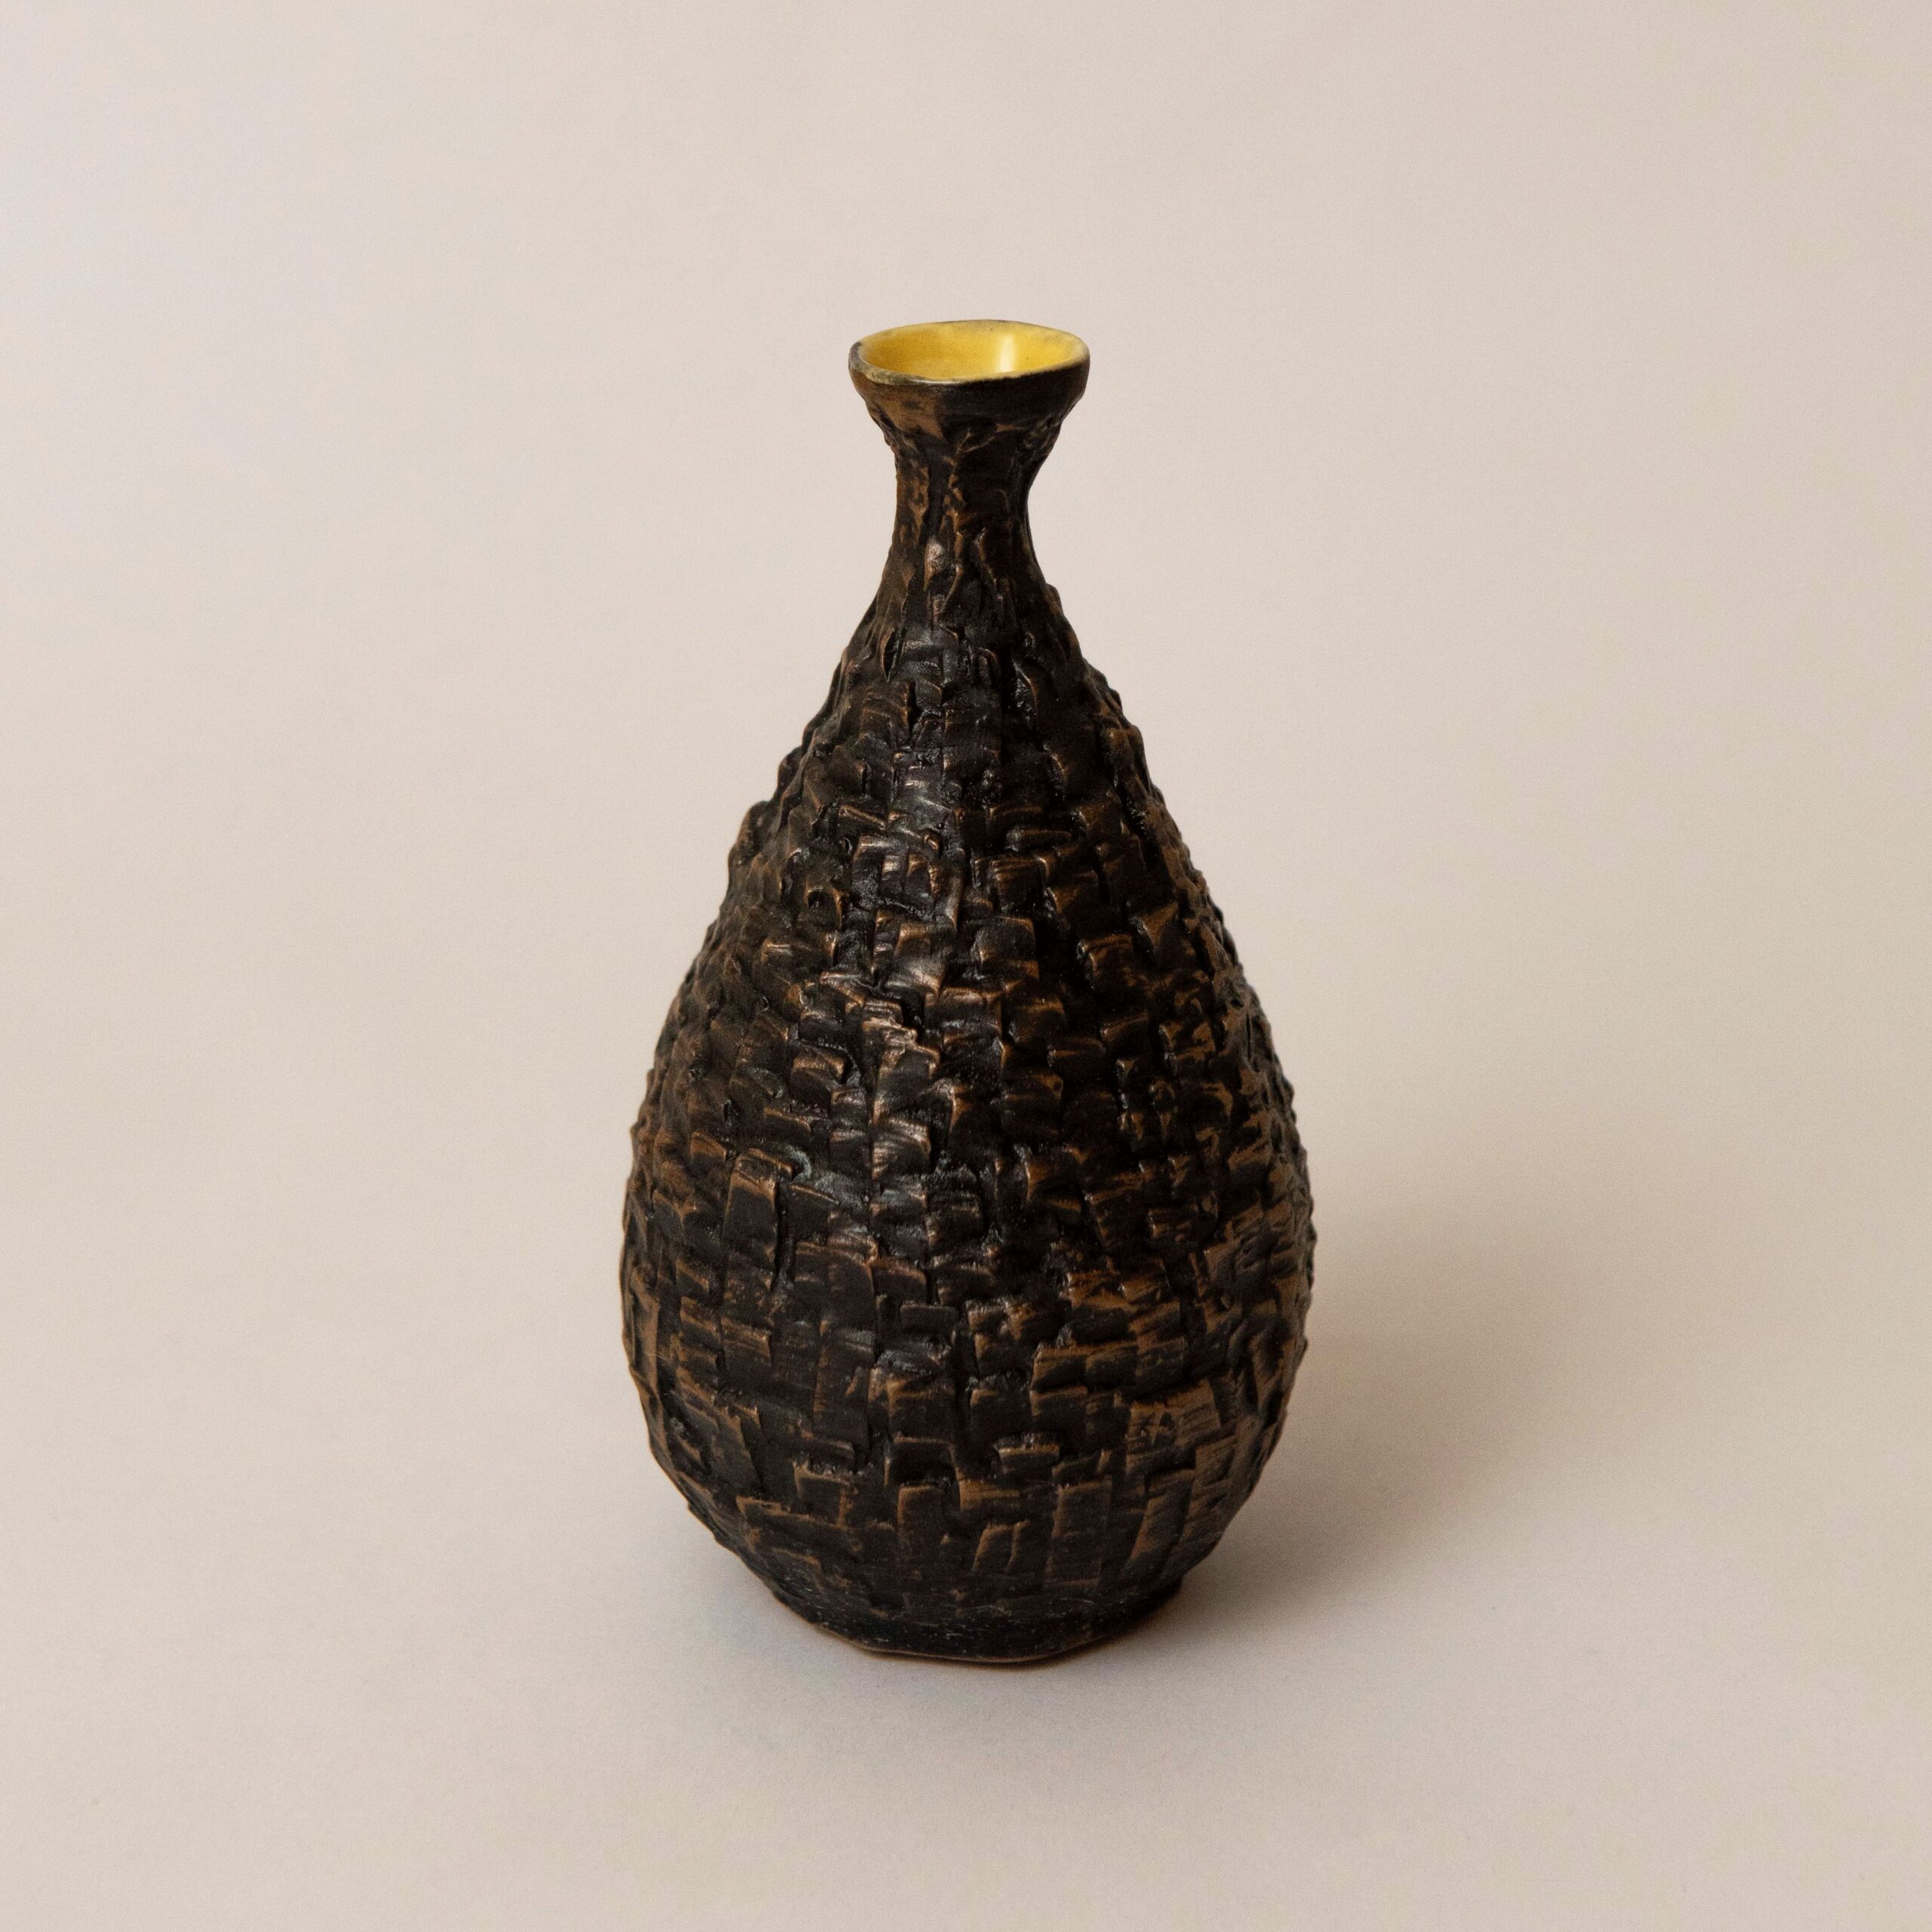 Studio Saboo: Small Yellow Rock Vase Product Image 1 of 1